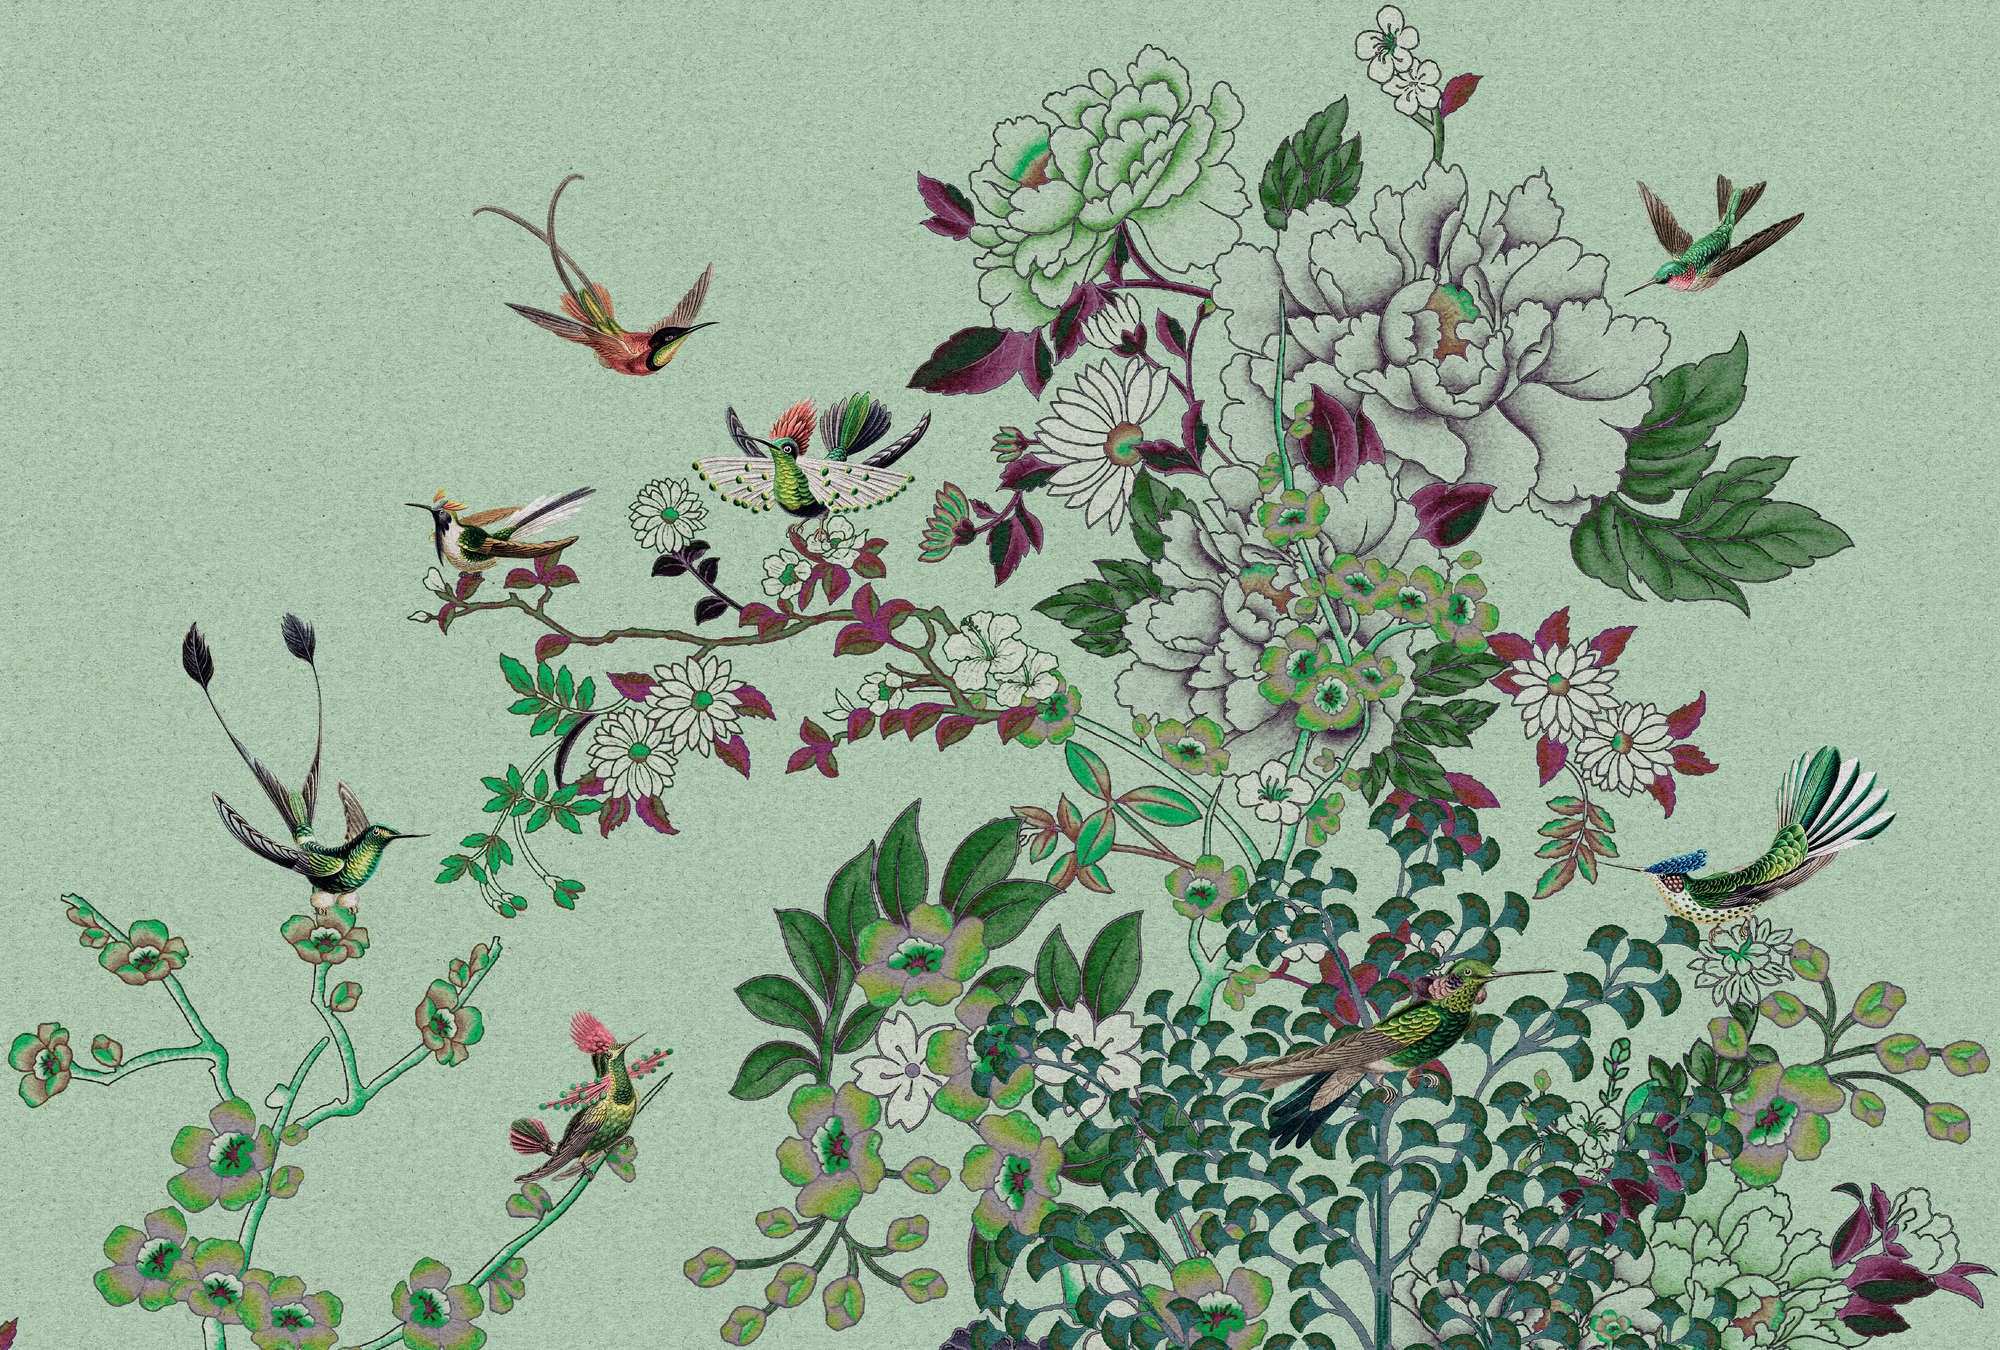             Fotomural »madras 1« - Motivo de flores verdes con pájaros sobre textura de papel kraft - Tela no tejida de textura ligera
        